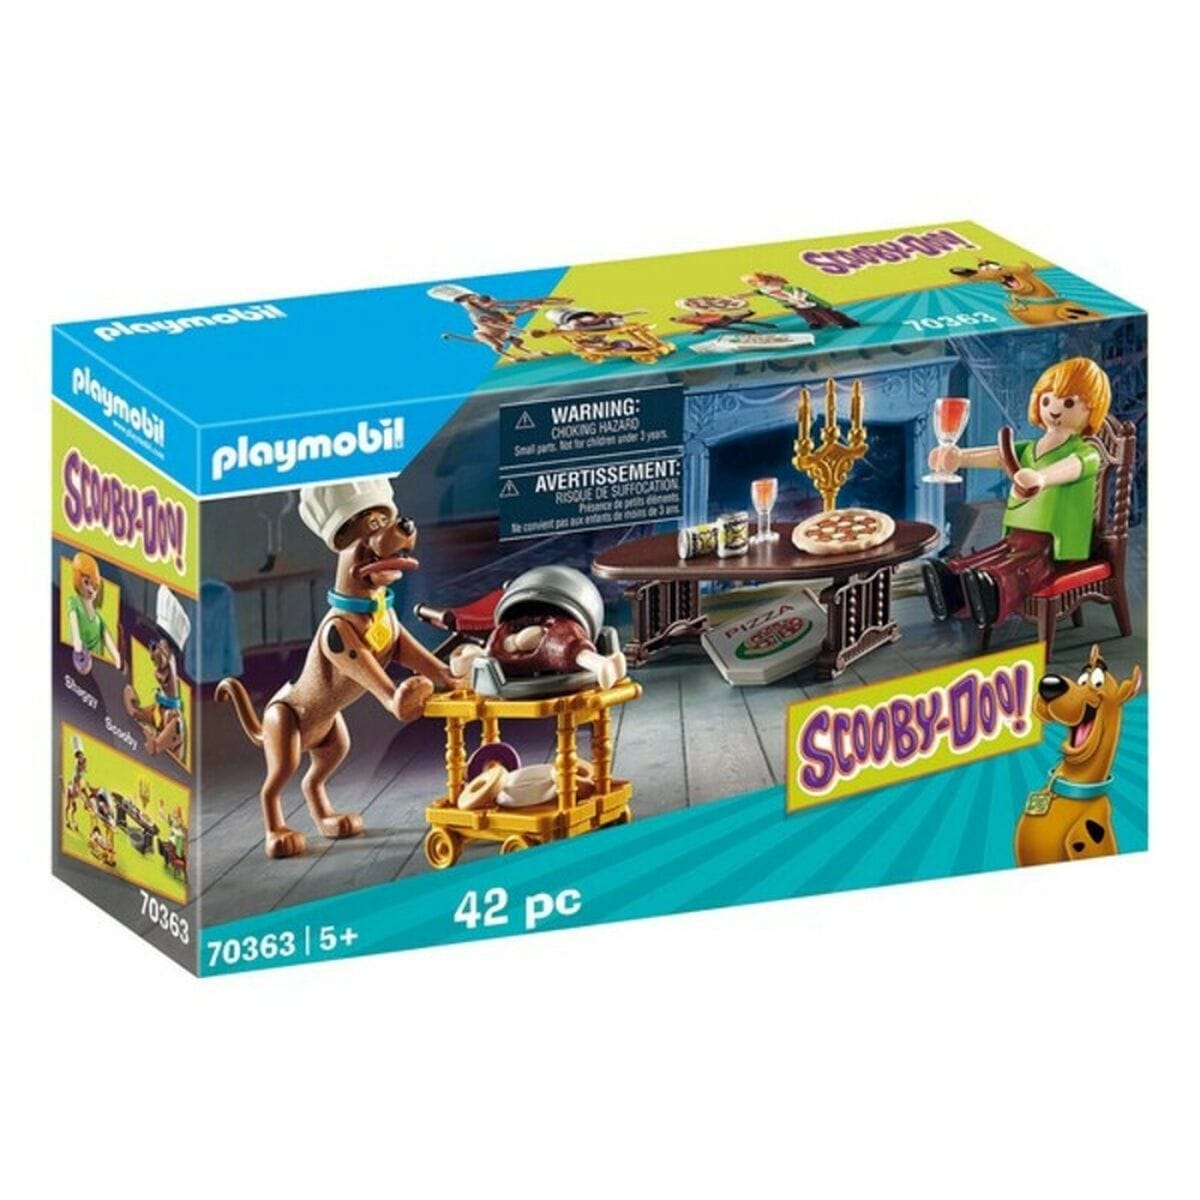 Playmobil Spielzeug | Kostüme > Spielzeug und Spiele > Weiteres spielzeug Playset Scooby-Doo! Shaggy Playmobil 70363 (42 pcs)